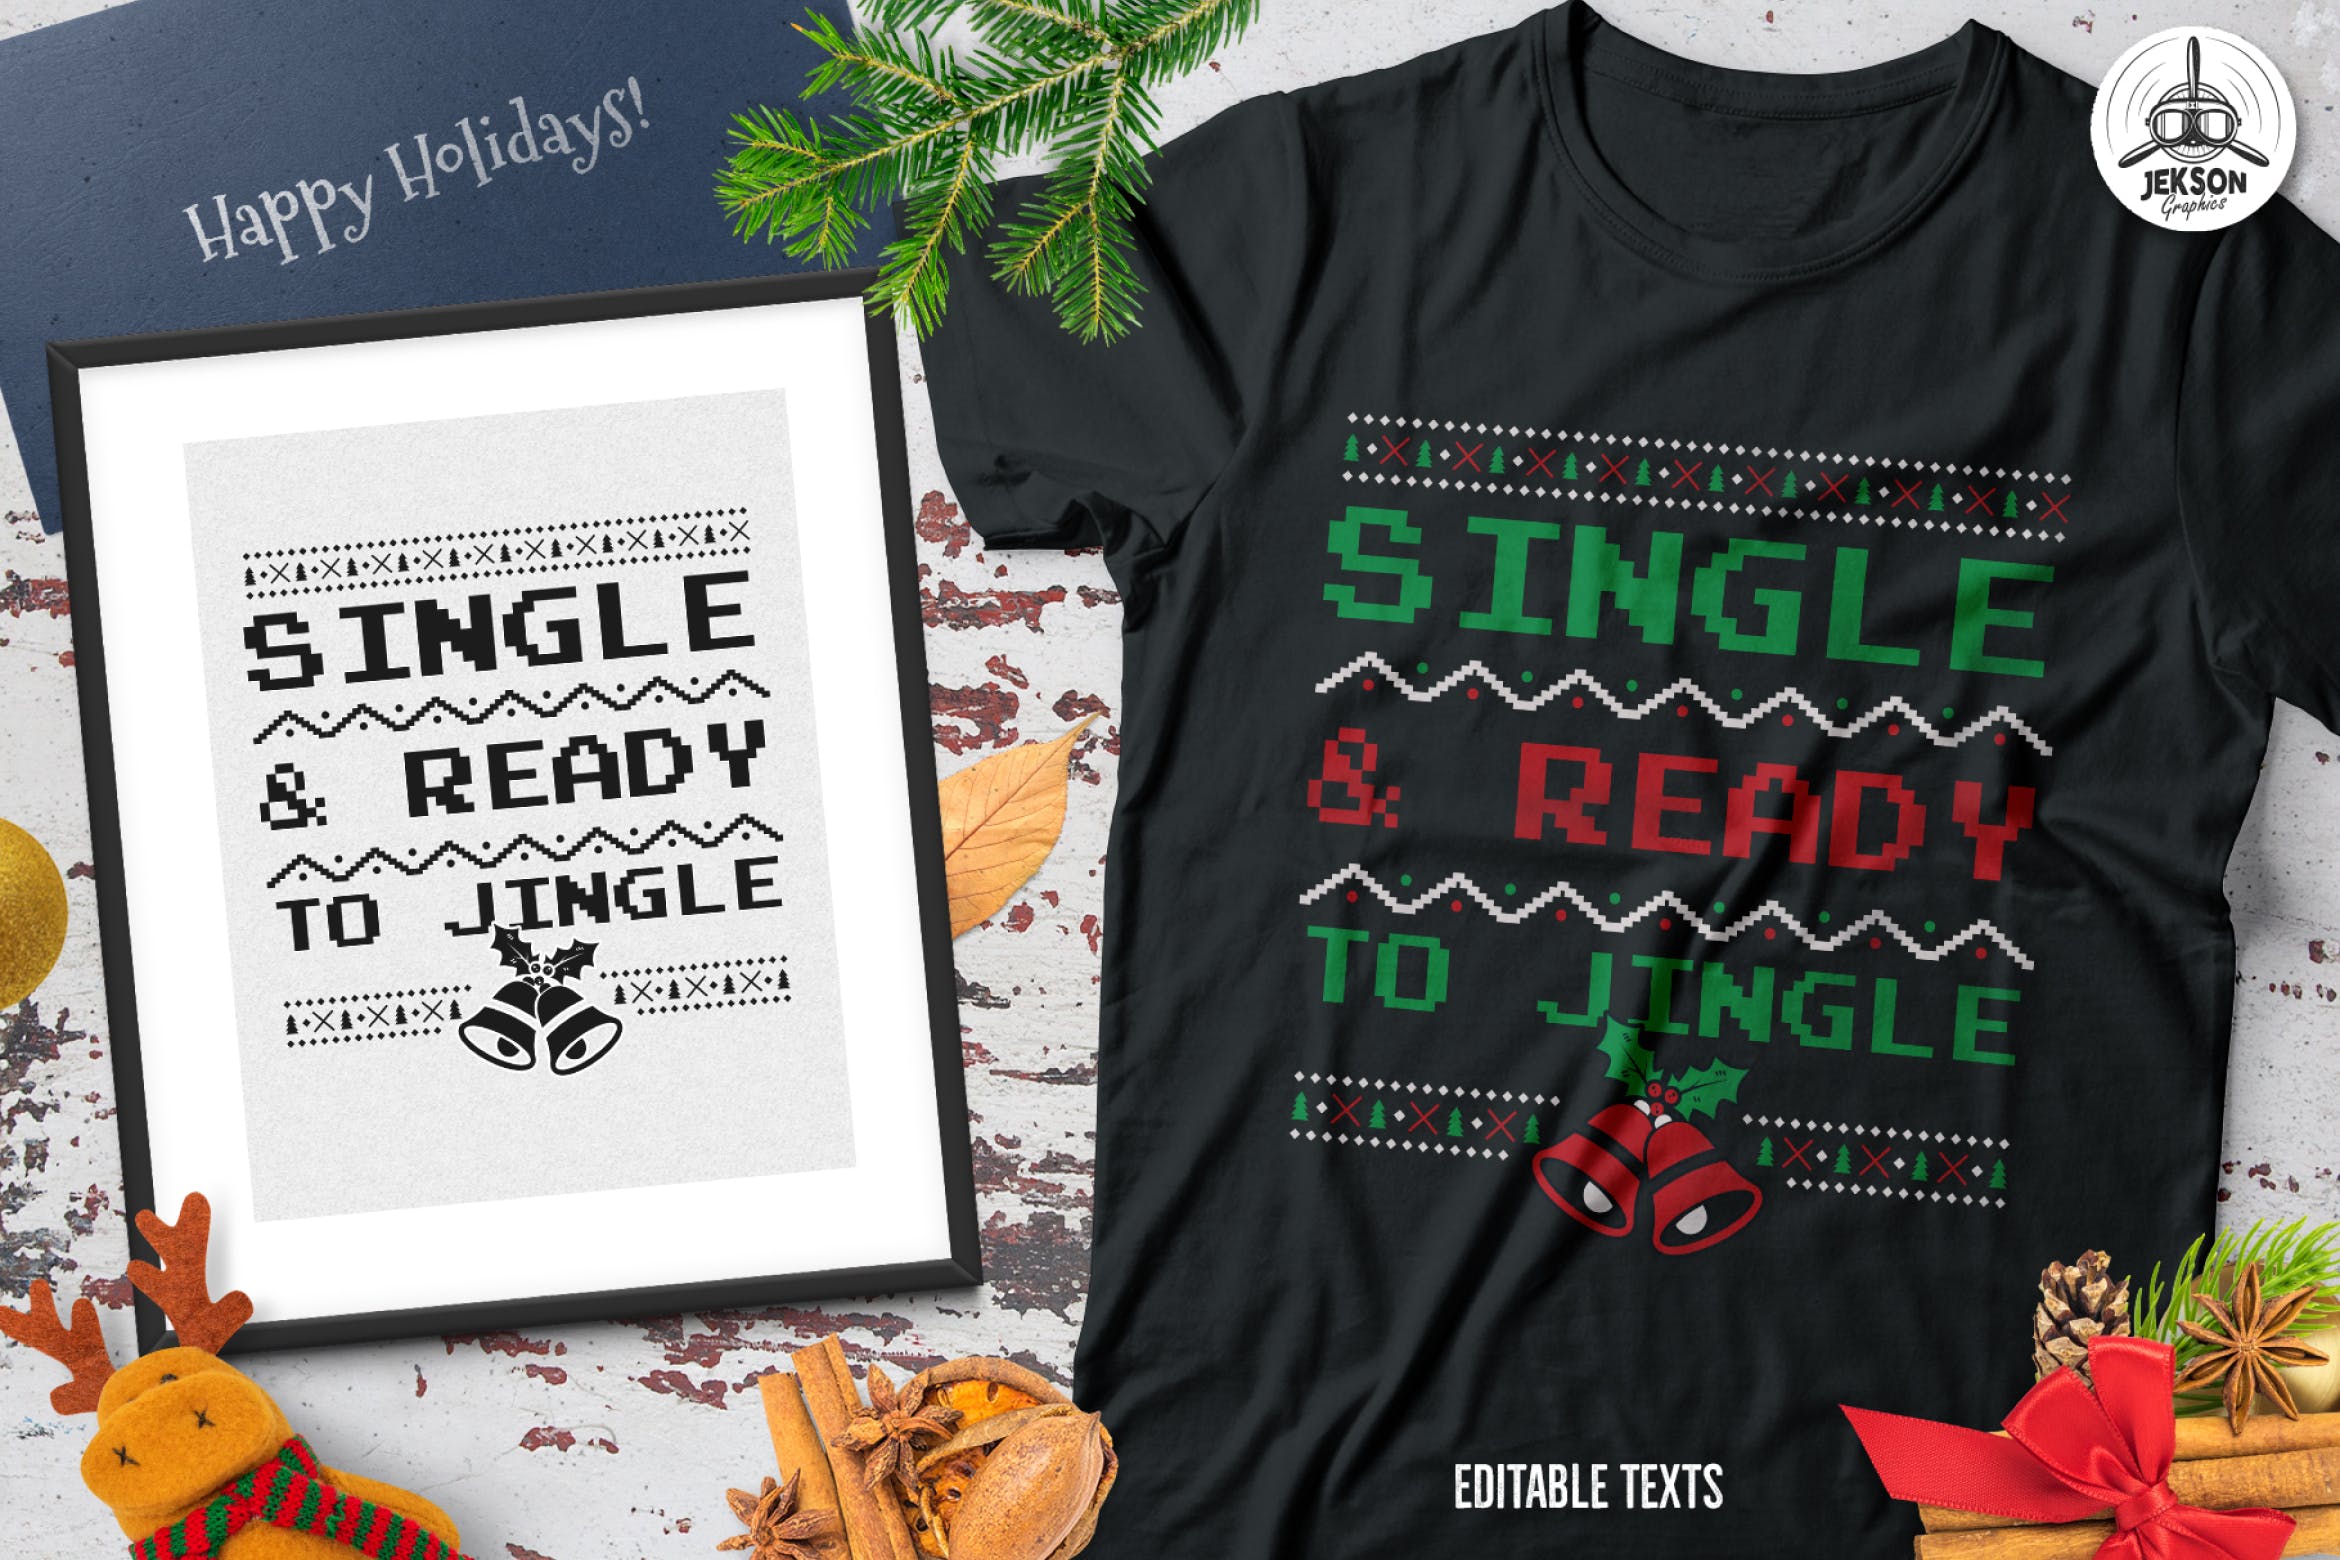 圣诞叮当毛衣T恤印花手绘图案设计素材 Christmas Jingle Sweater T-Shirt Xmas Retro Party插图